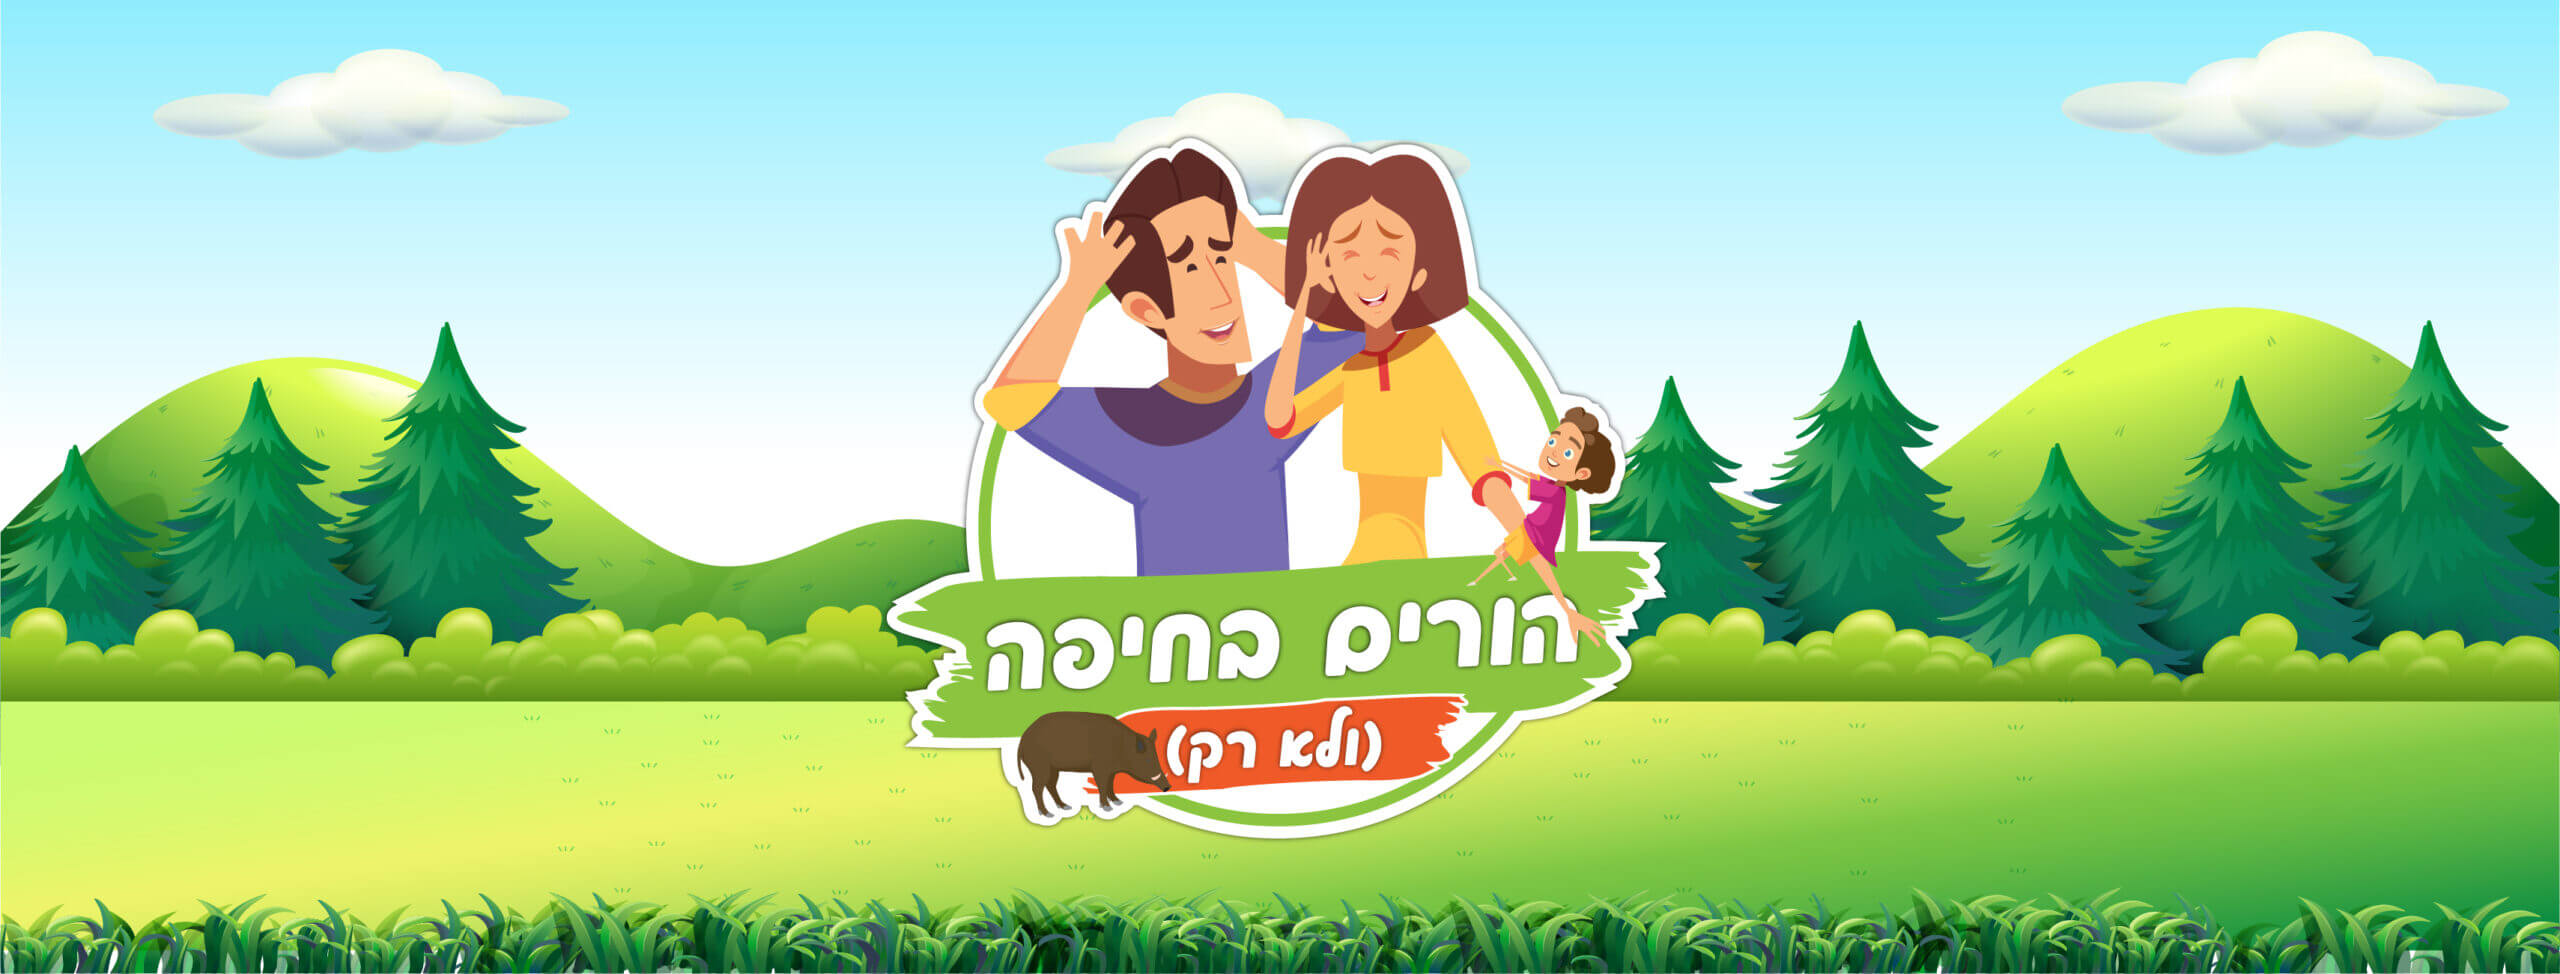 הורים בחיפה | עיצוב לוגו וקאבר